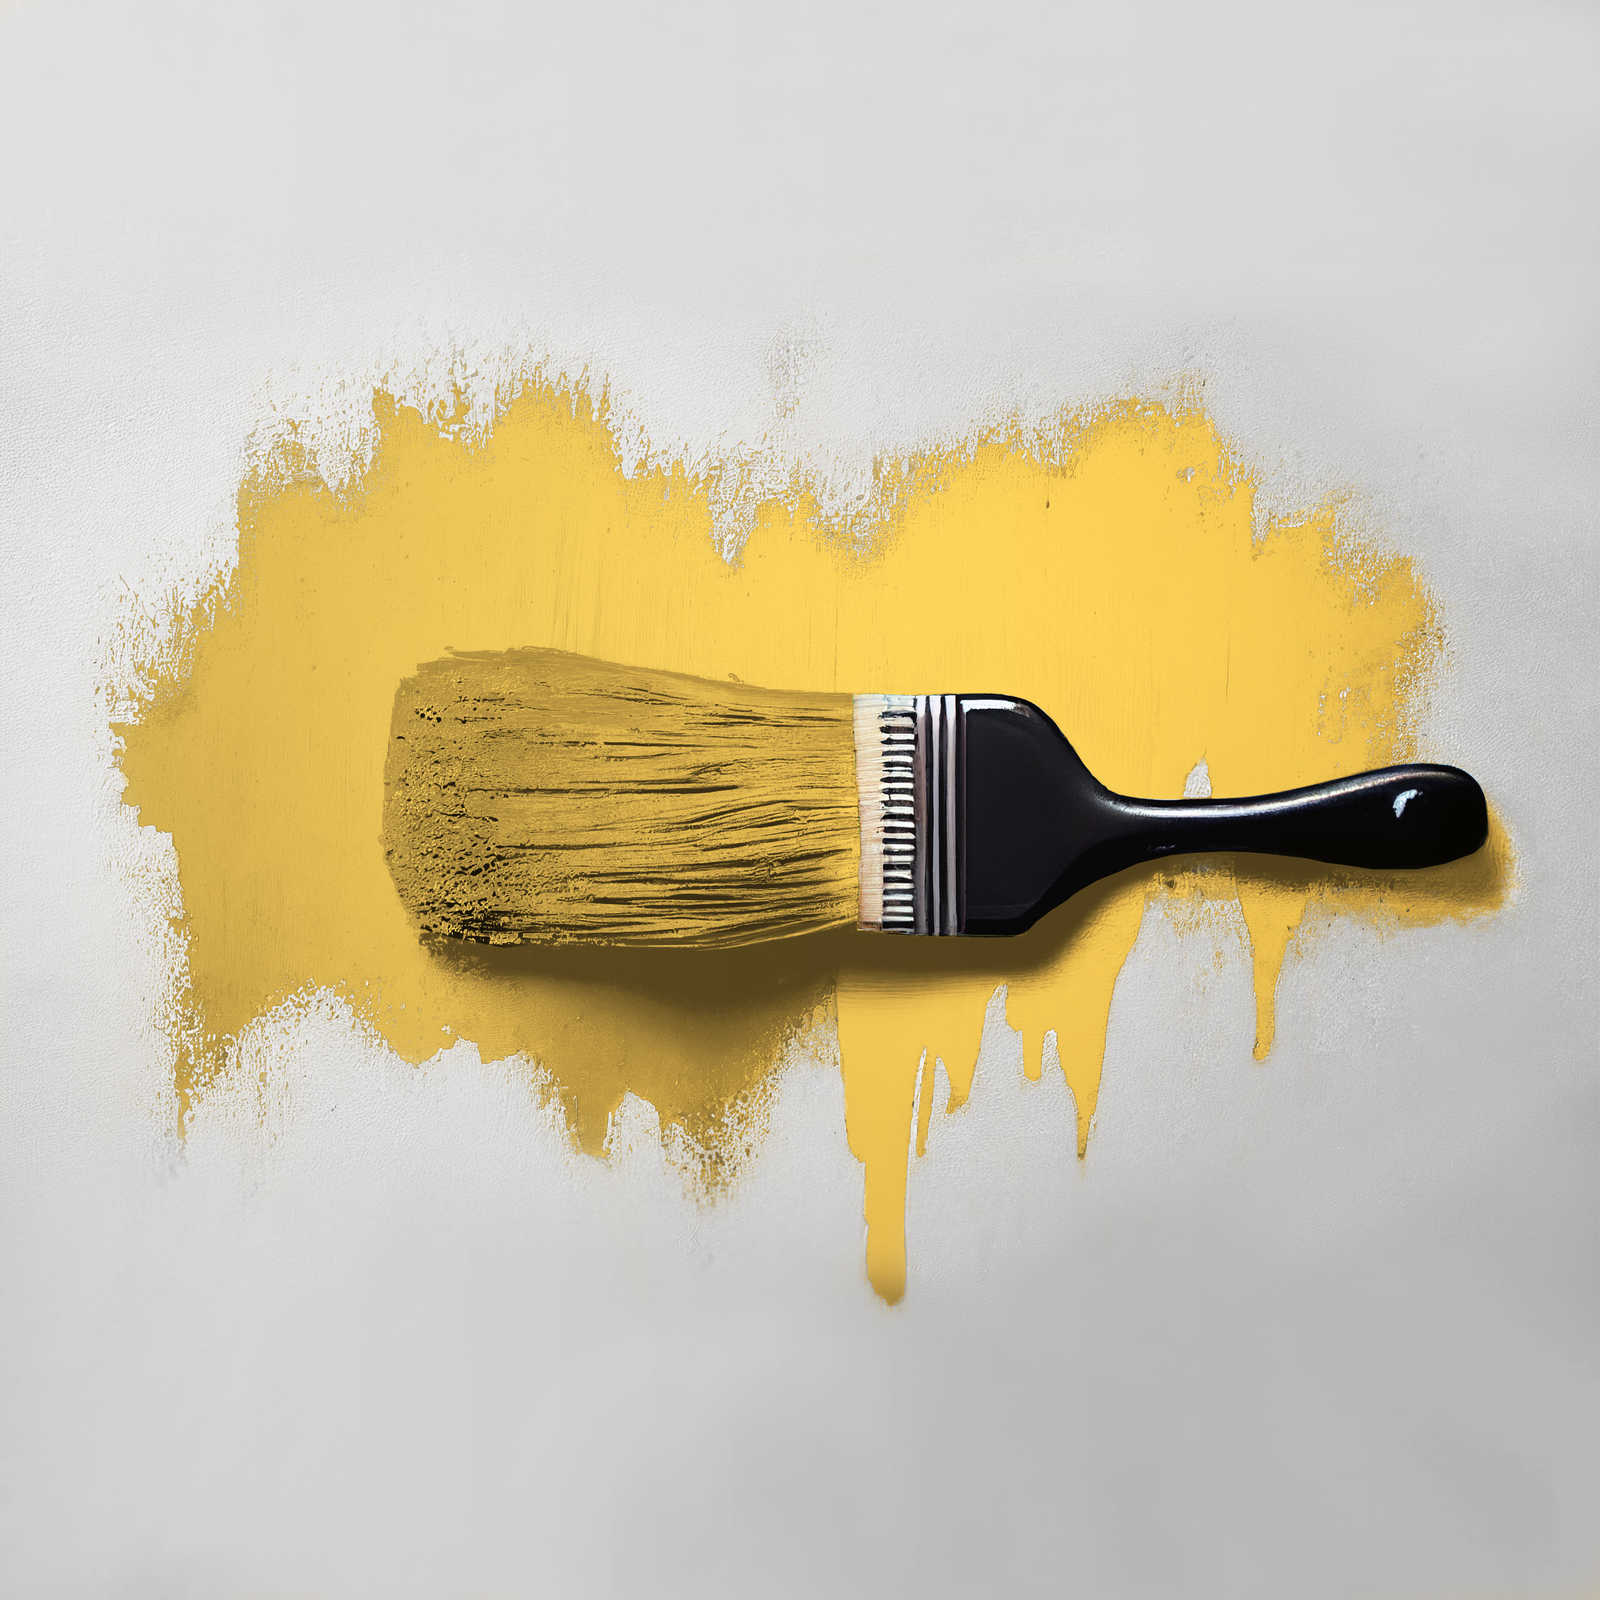             Pittura murale TCK5003 »Mighty Mango« in giallo brillante – 2,5 litri
        